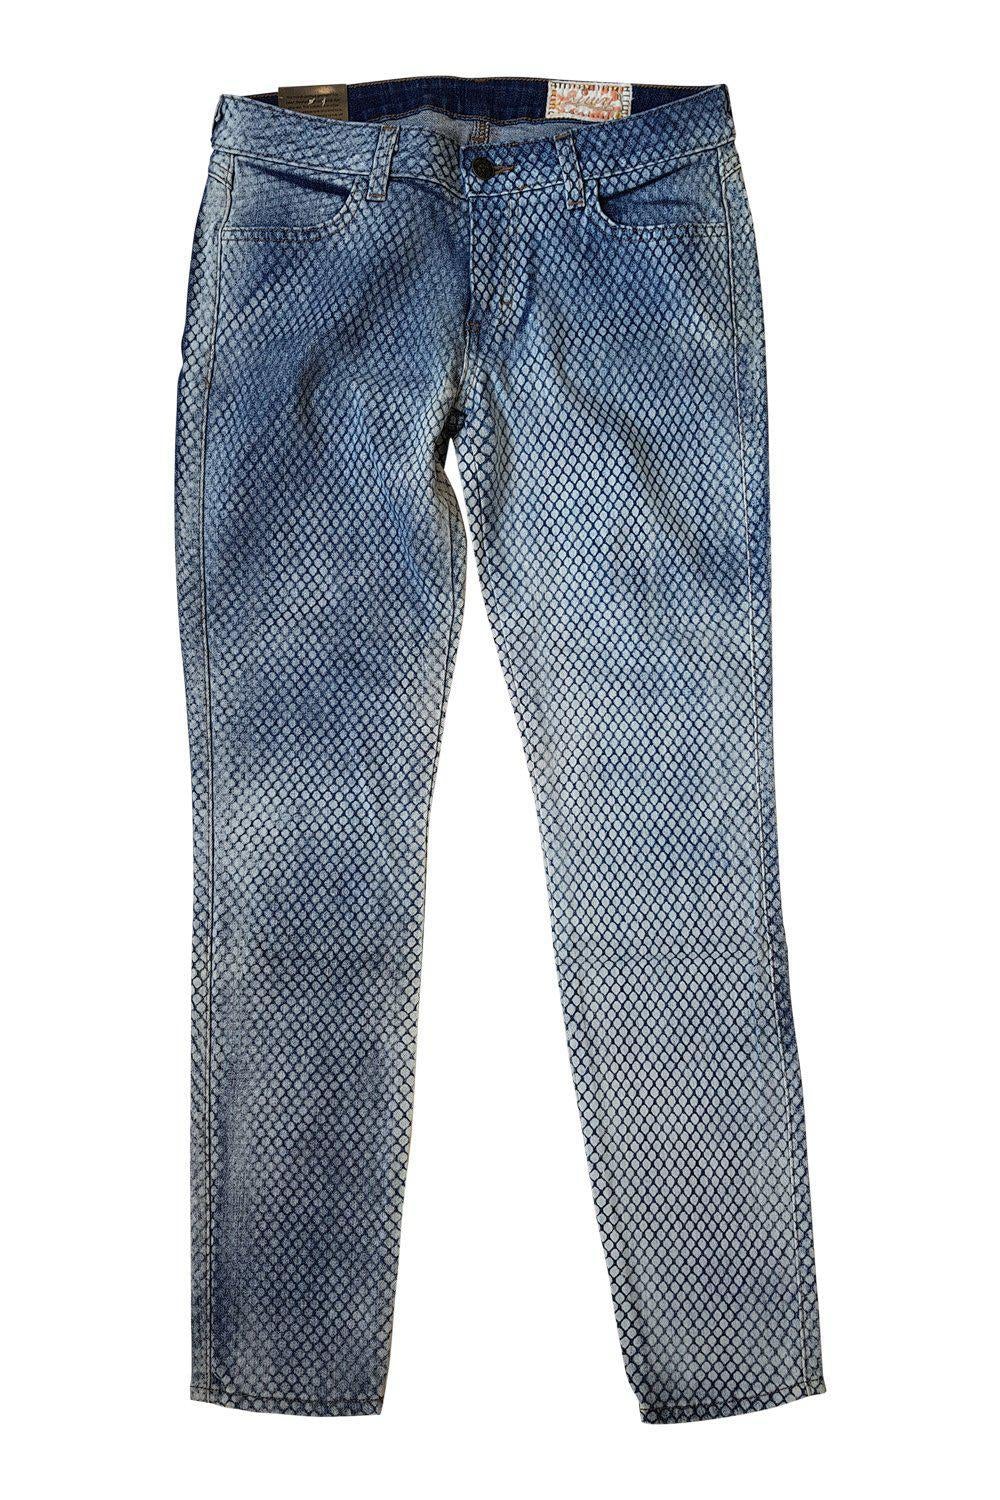 SIWY Hannah Straight Leg Jeans Sugar Shack Skinny Blue (W29 L28)-Siwy-The Freperie